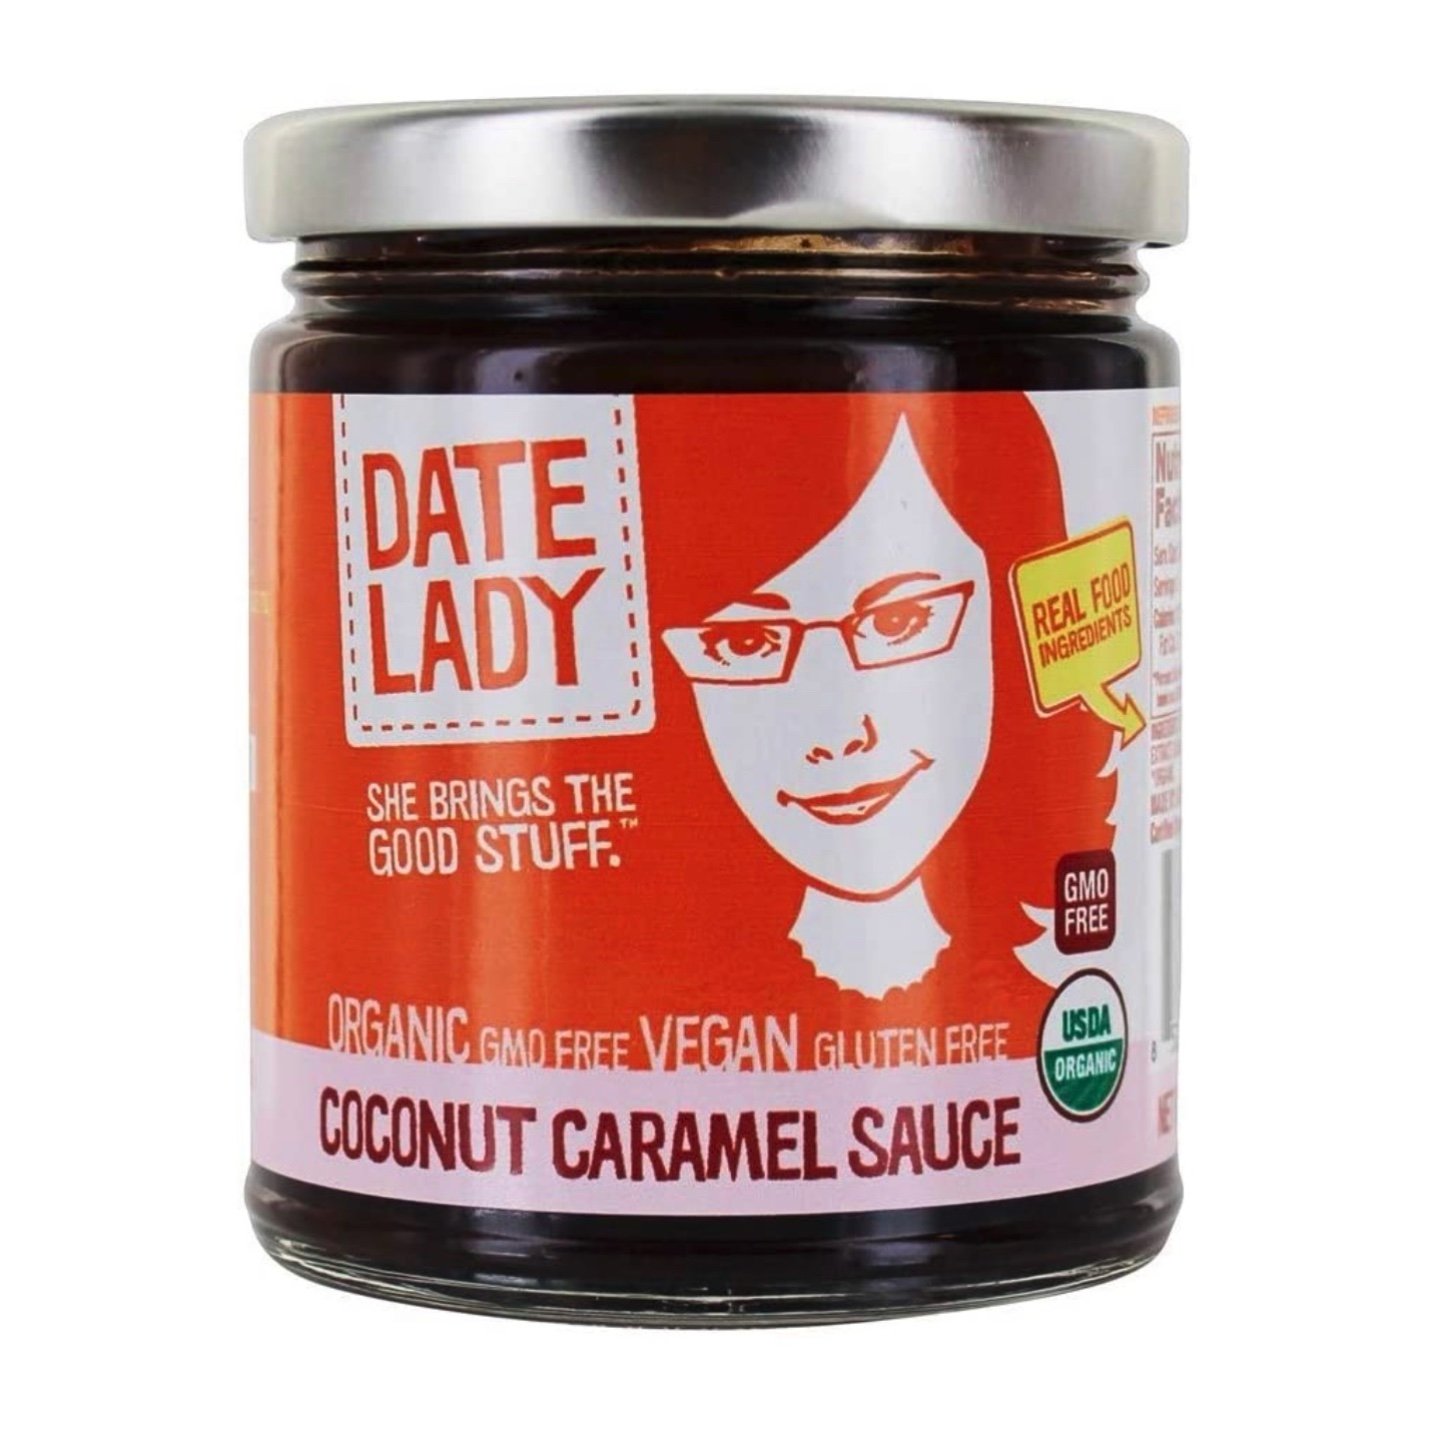 Coconut caramel sauce